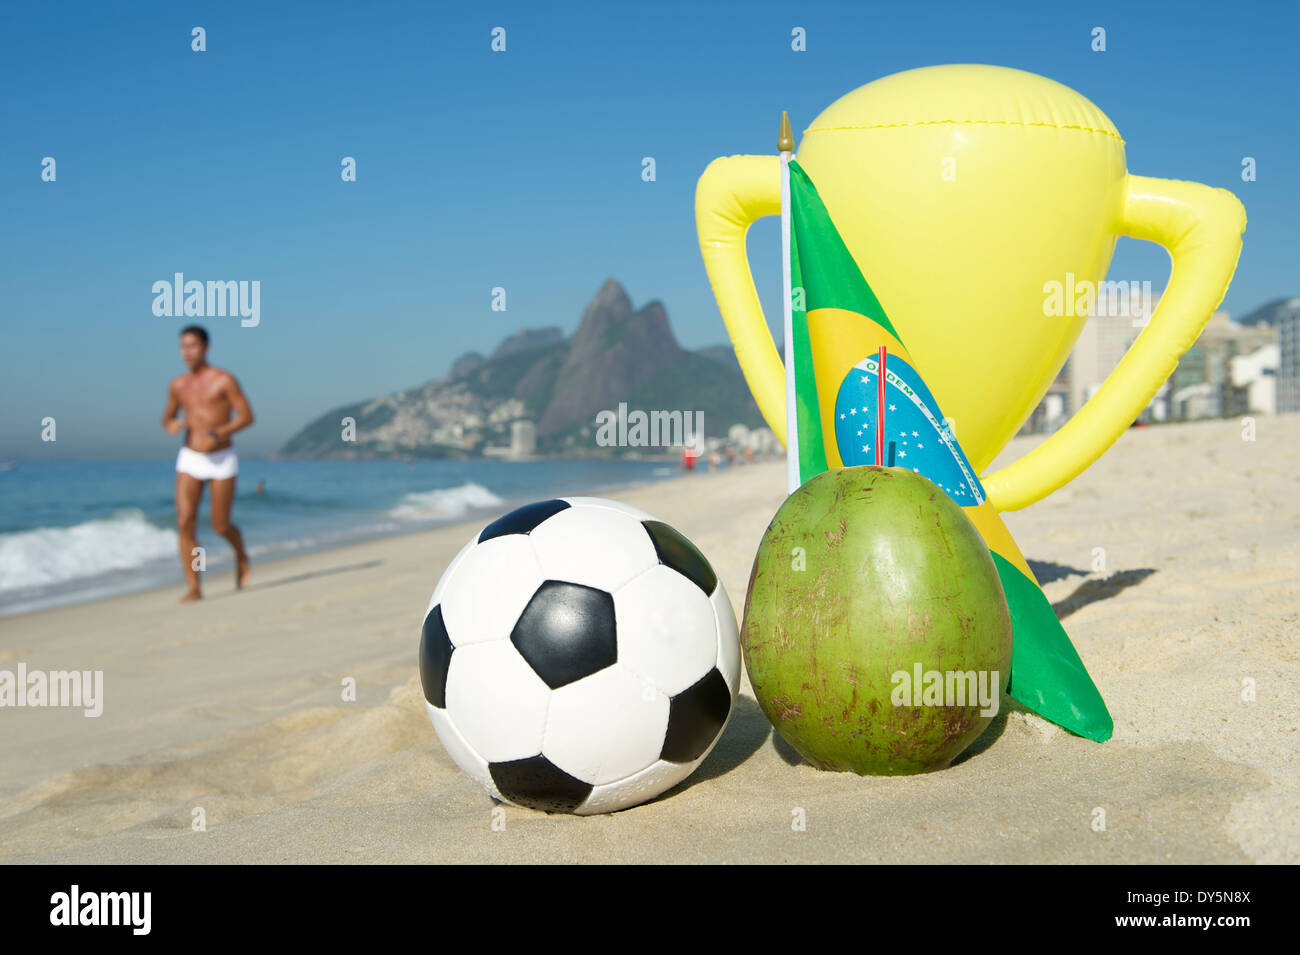 brasile-calcio-campione-del-trofeo-con-il-calcio-cocco-e-bandiera-brasiliana-sulla-spiaggia-di-ipanema-di-rio-de-janeiro-in-brasile-dy5n8x.jpg